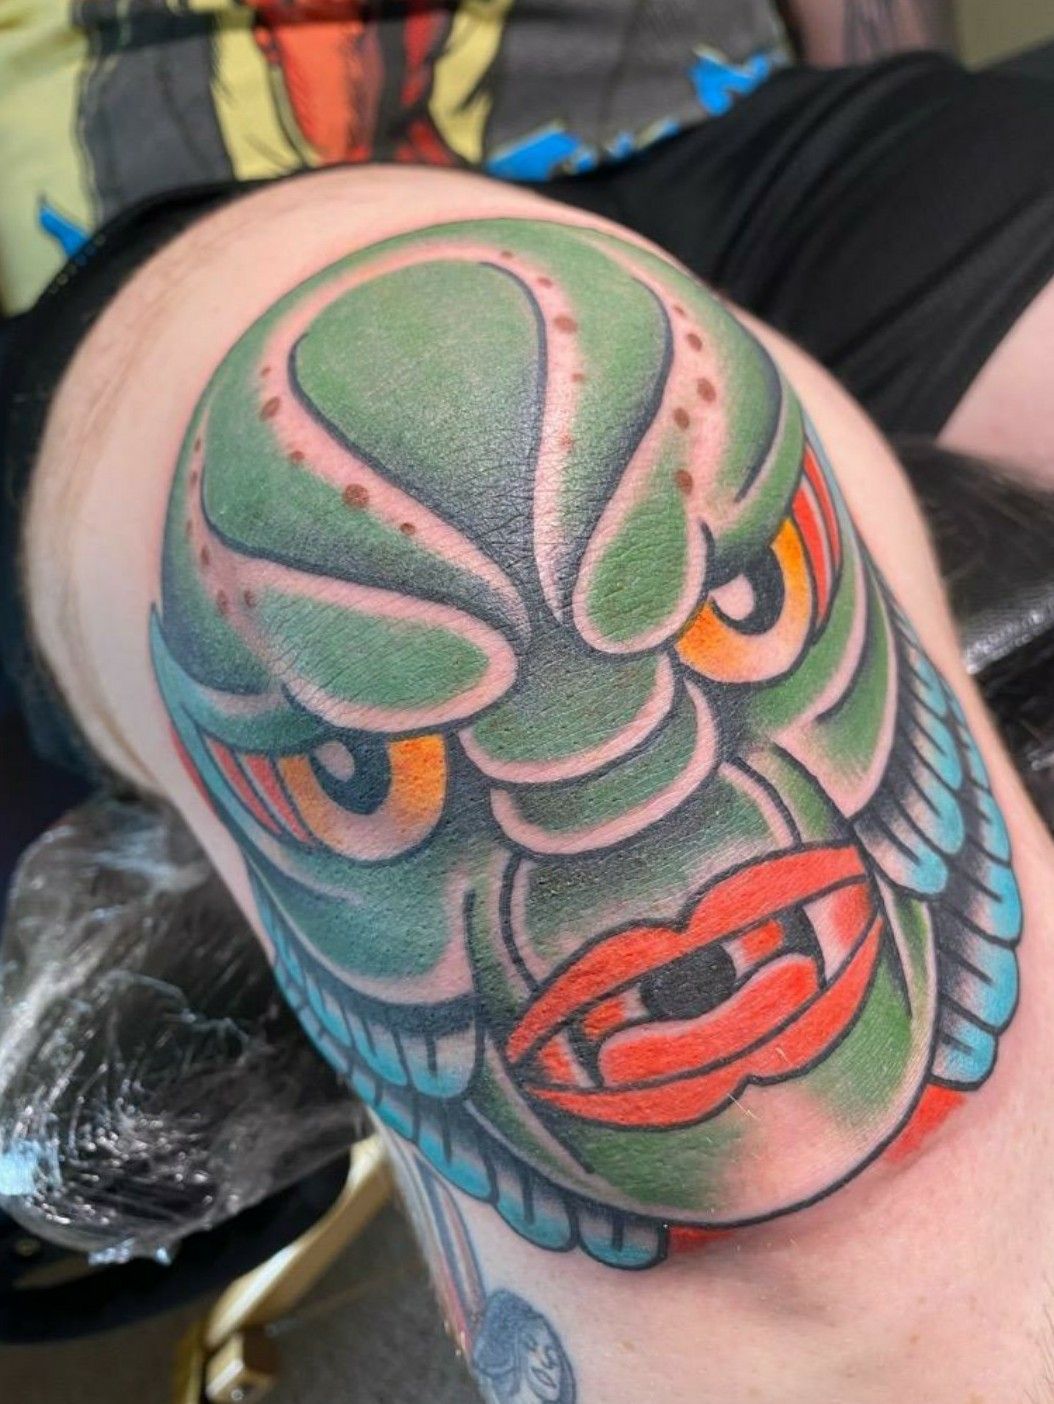 Tattoo uploaded by Jon Not John • Creature from the Black Lagoon knee.  #kneetattoo #kneecaptattoo #monster #creaturefromtheblacklagoon • Tattoodo